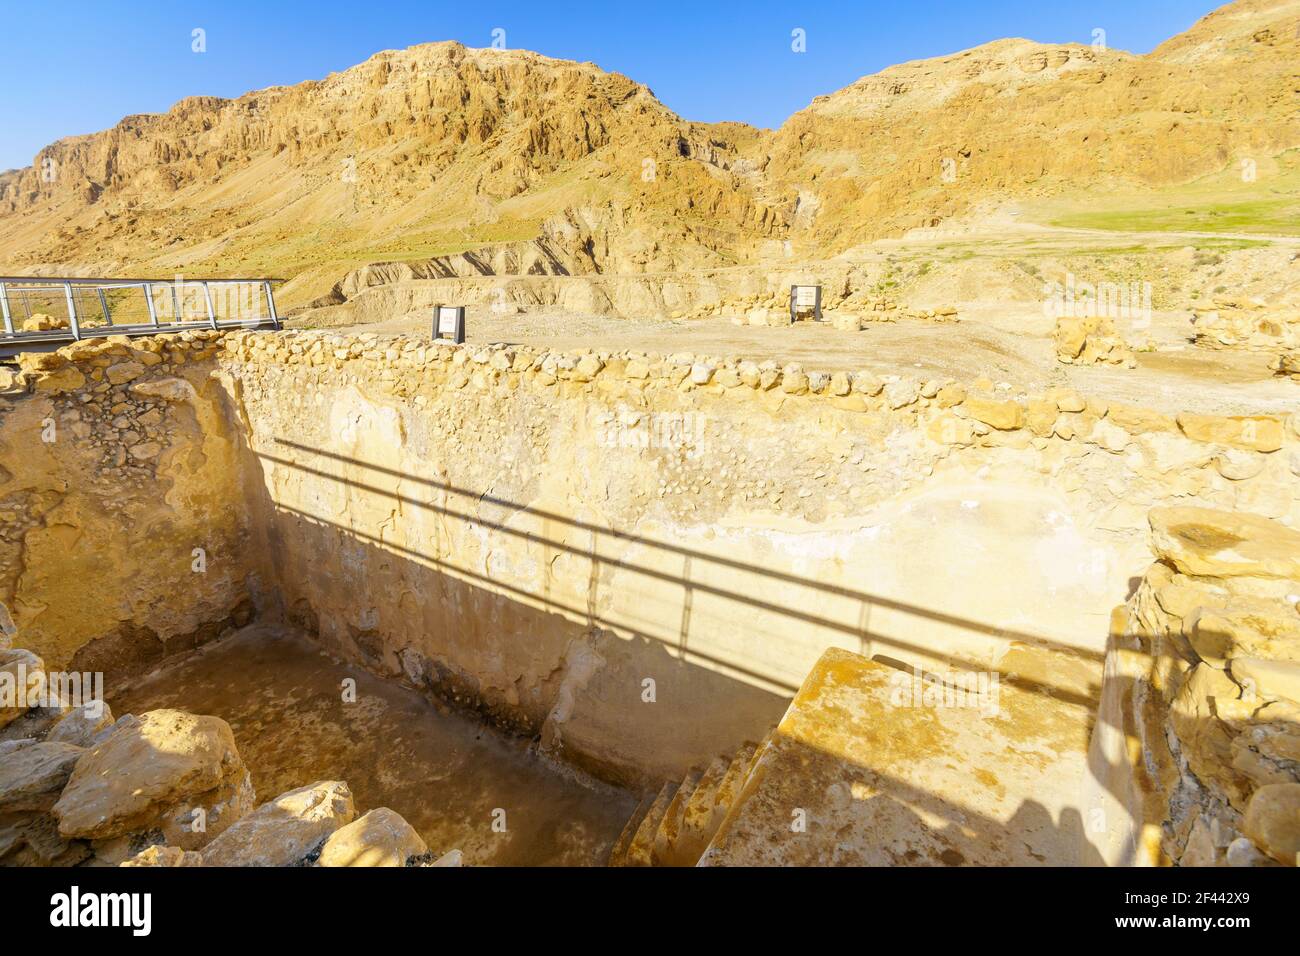 Qumran, Israël - 12 mars 2021 : vue d'un ancien réservoir d'eau à Qumran, au nord-ouest de la mer Morte, au sud d'Israël Banque D'Images